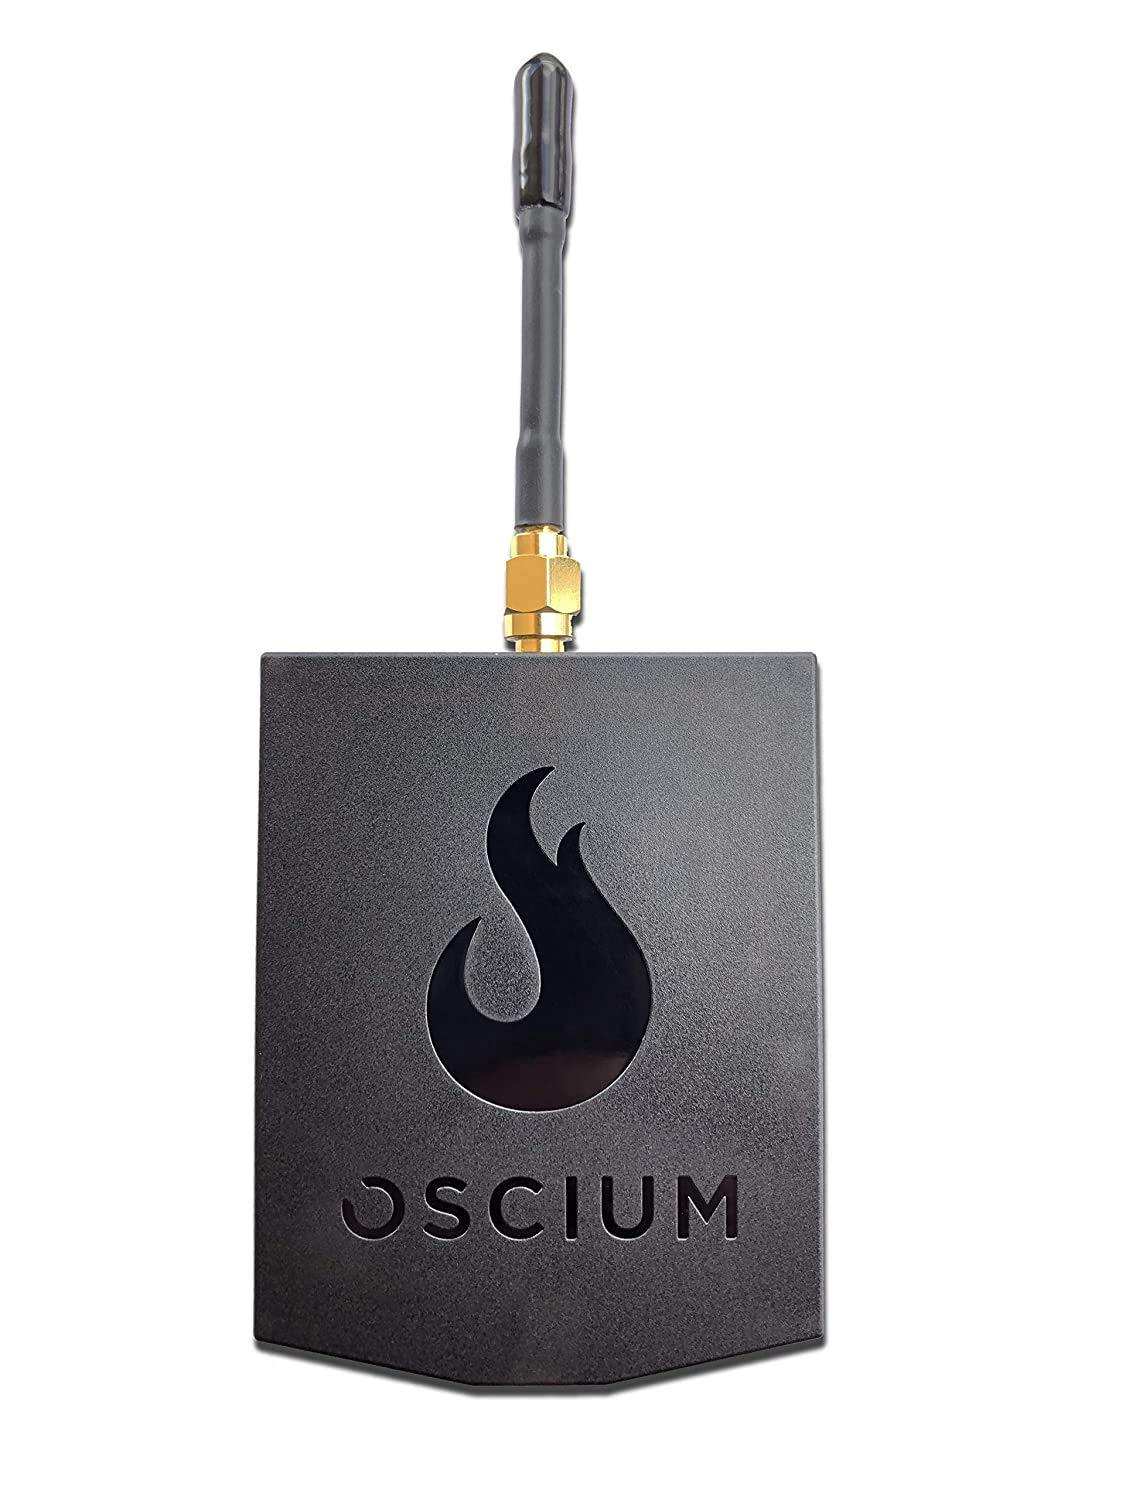 Primary image for OSCIUM WiPry 2500x: Wi-Fi Spectrum Analyzer, 2.4 & 5 GHz, Universal Platform